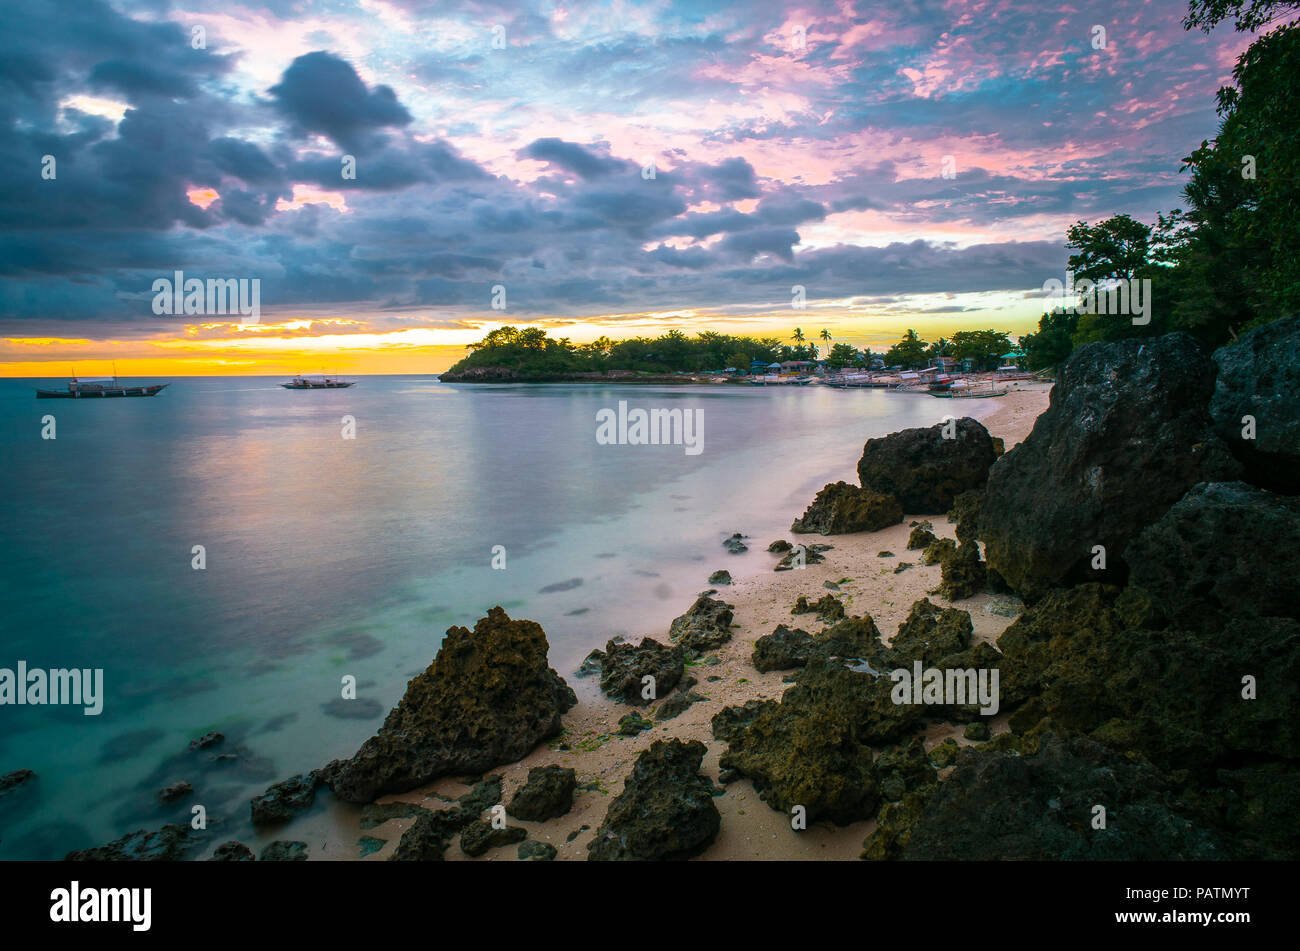 Rosa colorato tramonto Cielo sopra uno sperone isola paradisiaca spiaggia e mare - Langob, Malapascua, Cebu - Filippine Foto Stock